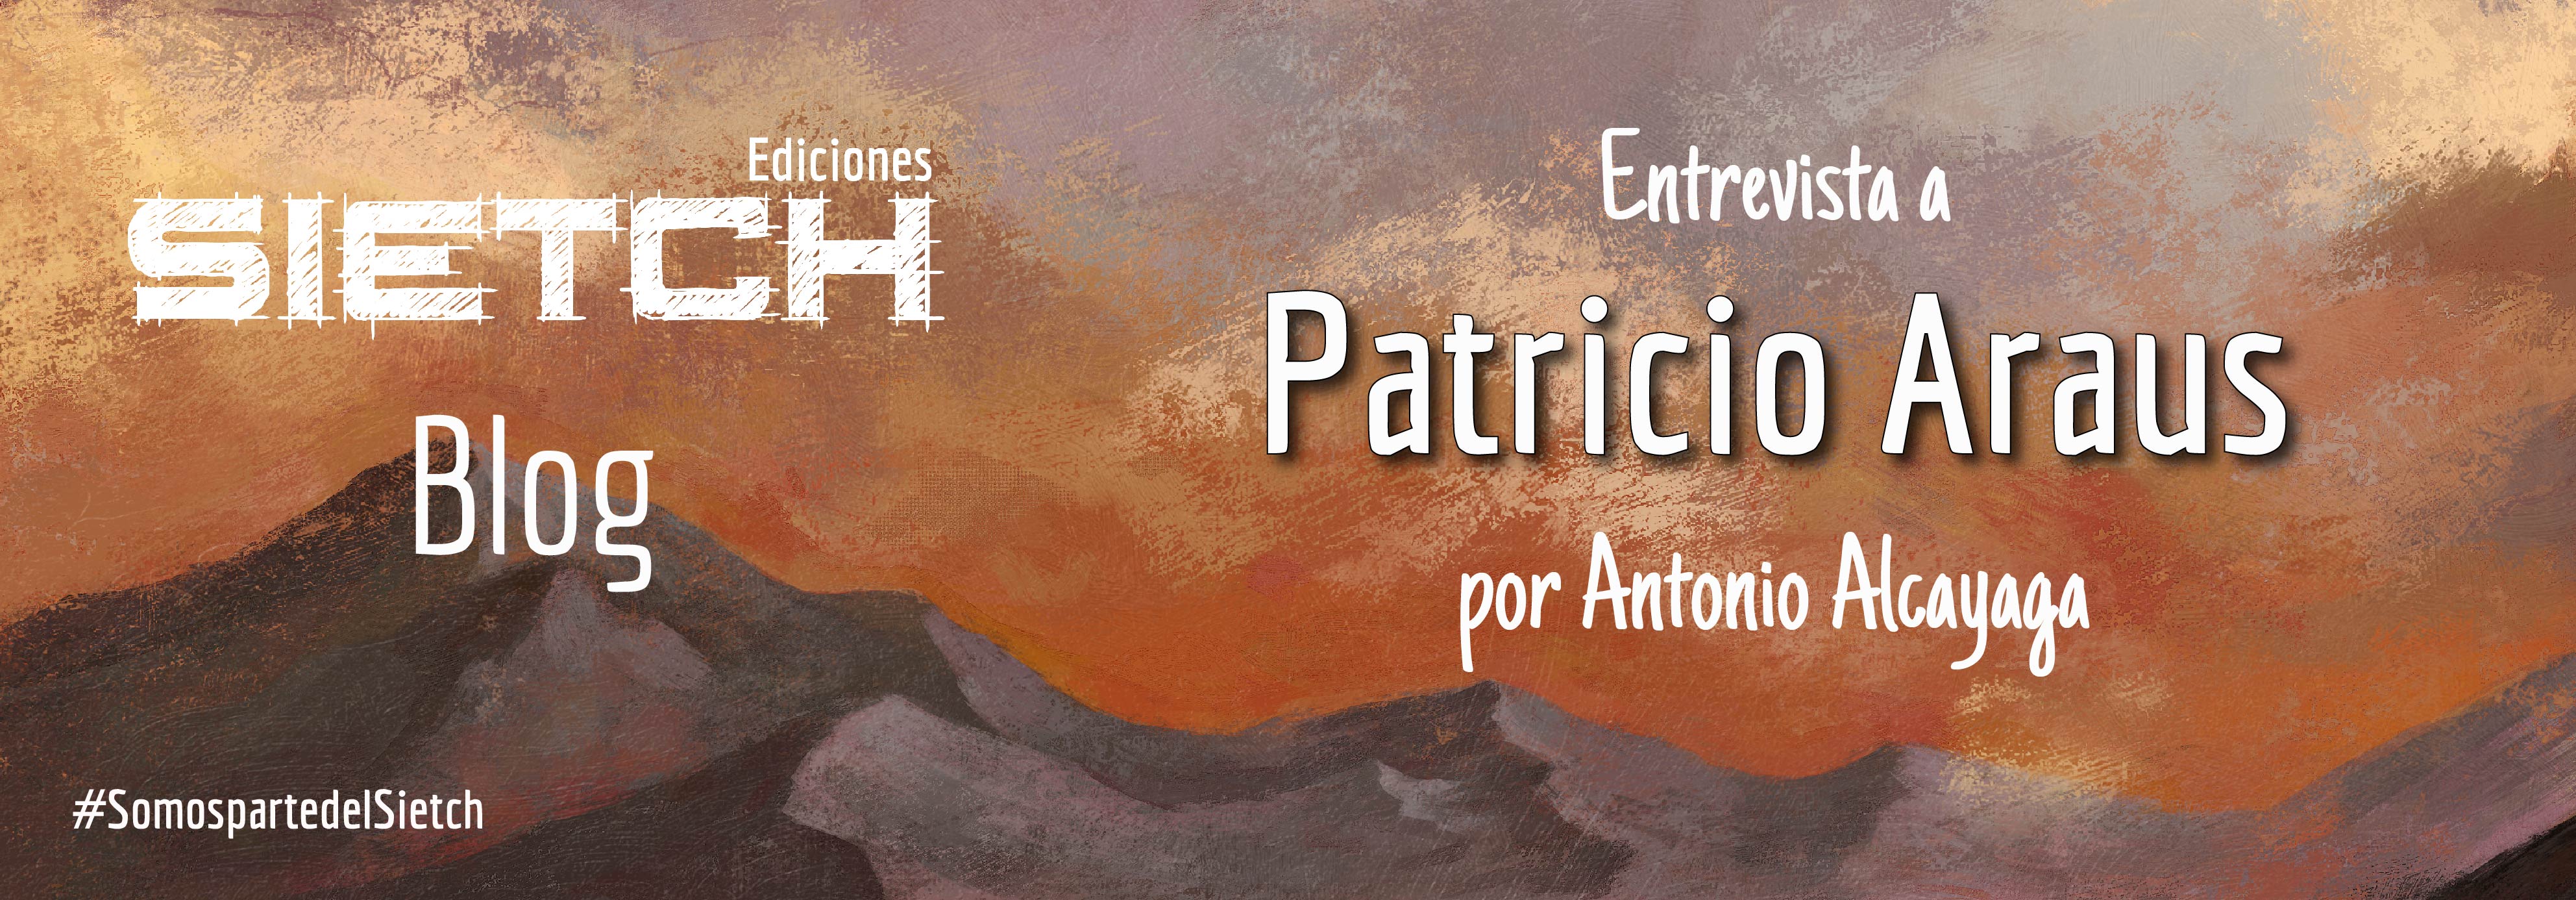 Entrevista a Patricio Araus